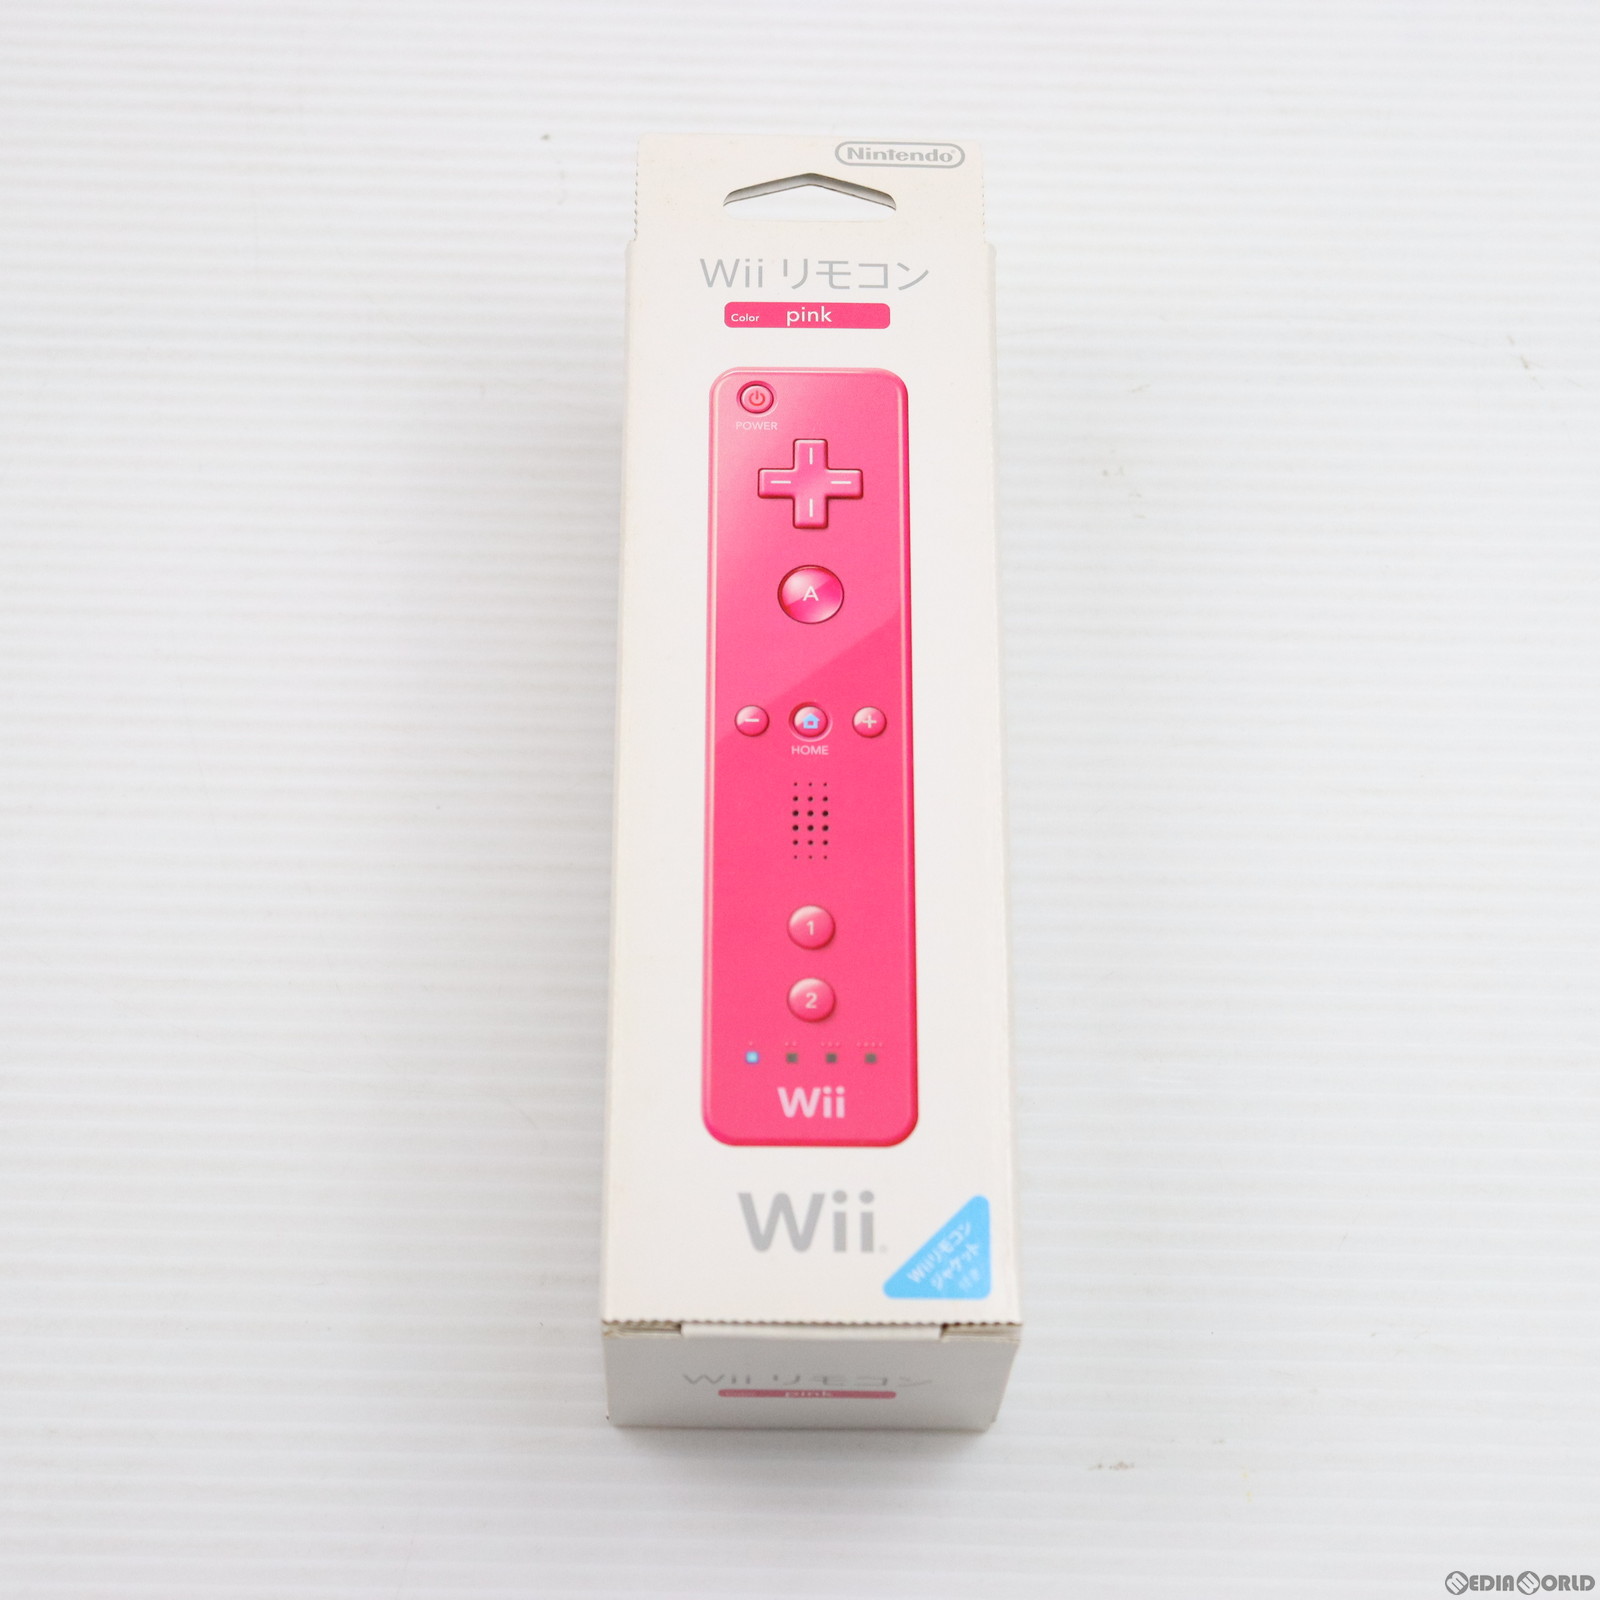 【中古即納】[ACC][Wii]Wiiリモコンジャケット・専用ストラップ付き Wiiリモコン(Wii Remote) ピンク 任天堂(RVL-A-CMP)(20091203)